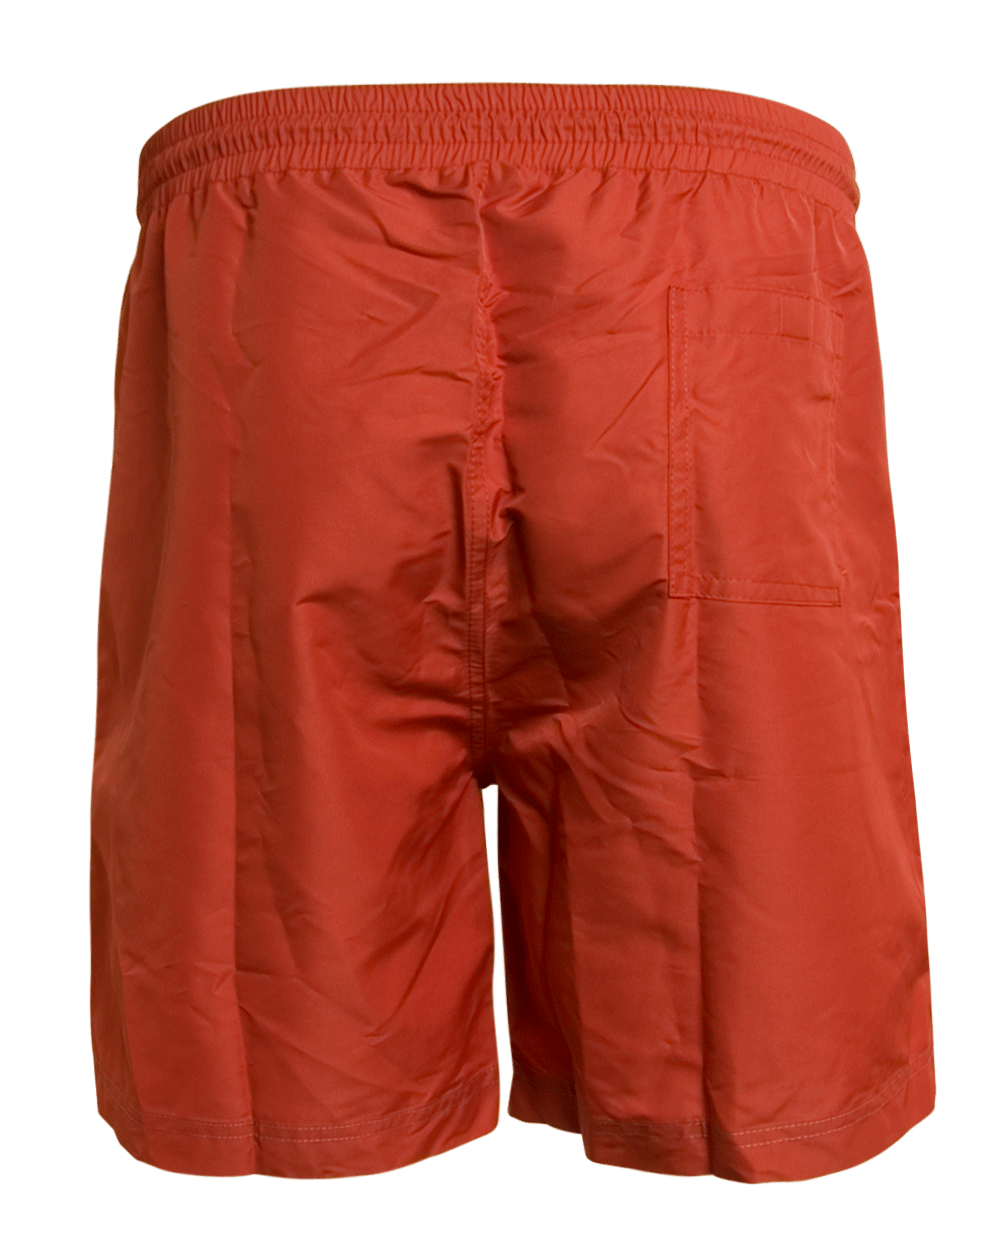 Solid Orange Swim Short